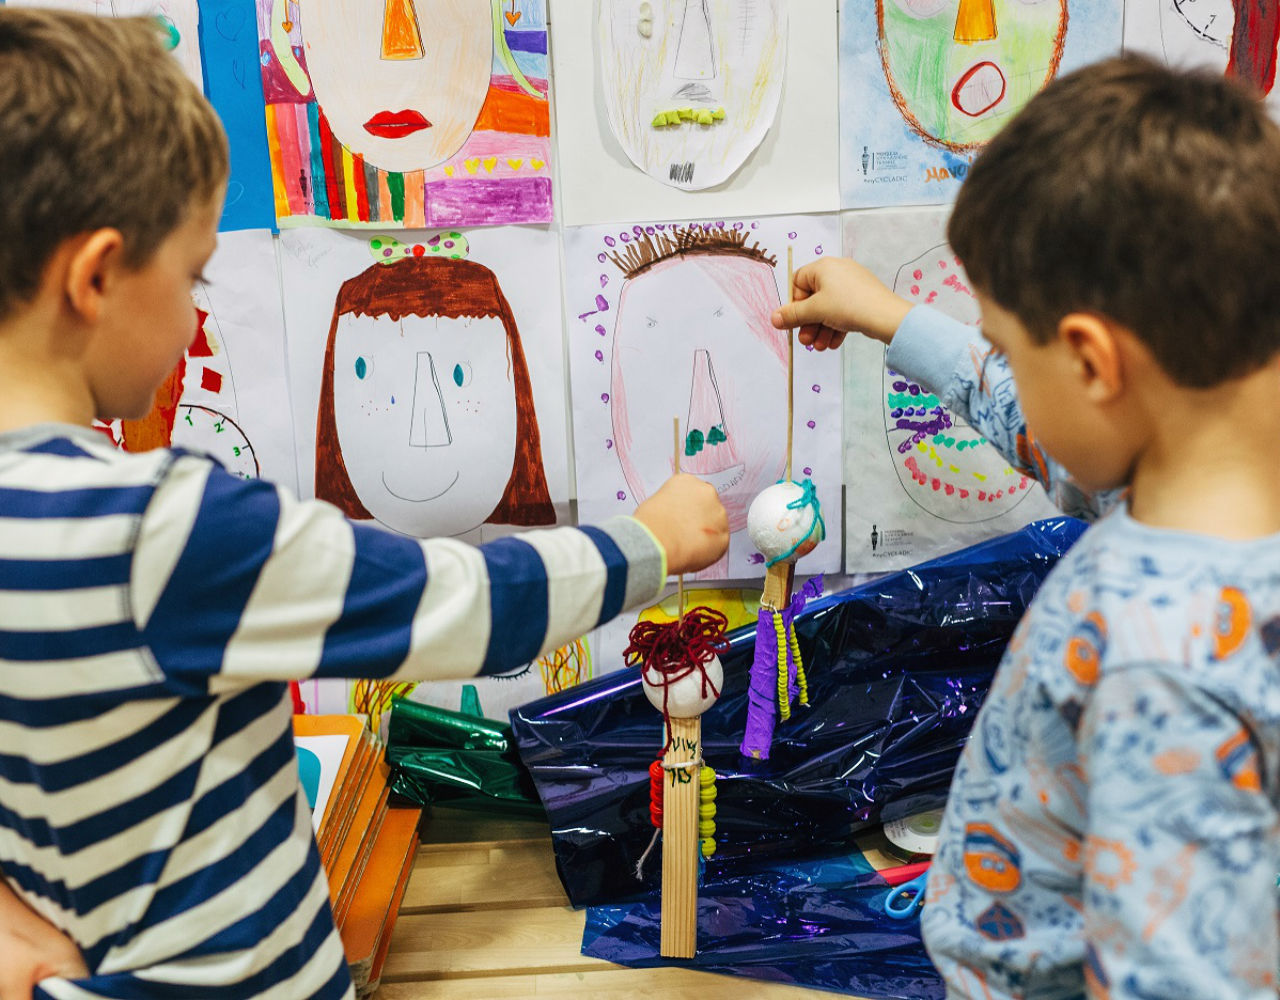 Τα εορταστικά εκπαιδευτικά προγράμματα στο Μουσείο Κυκλαδίτικης Τέχνης για παιδιά και οικογένειες